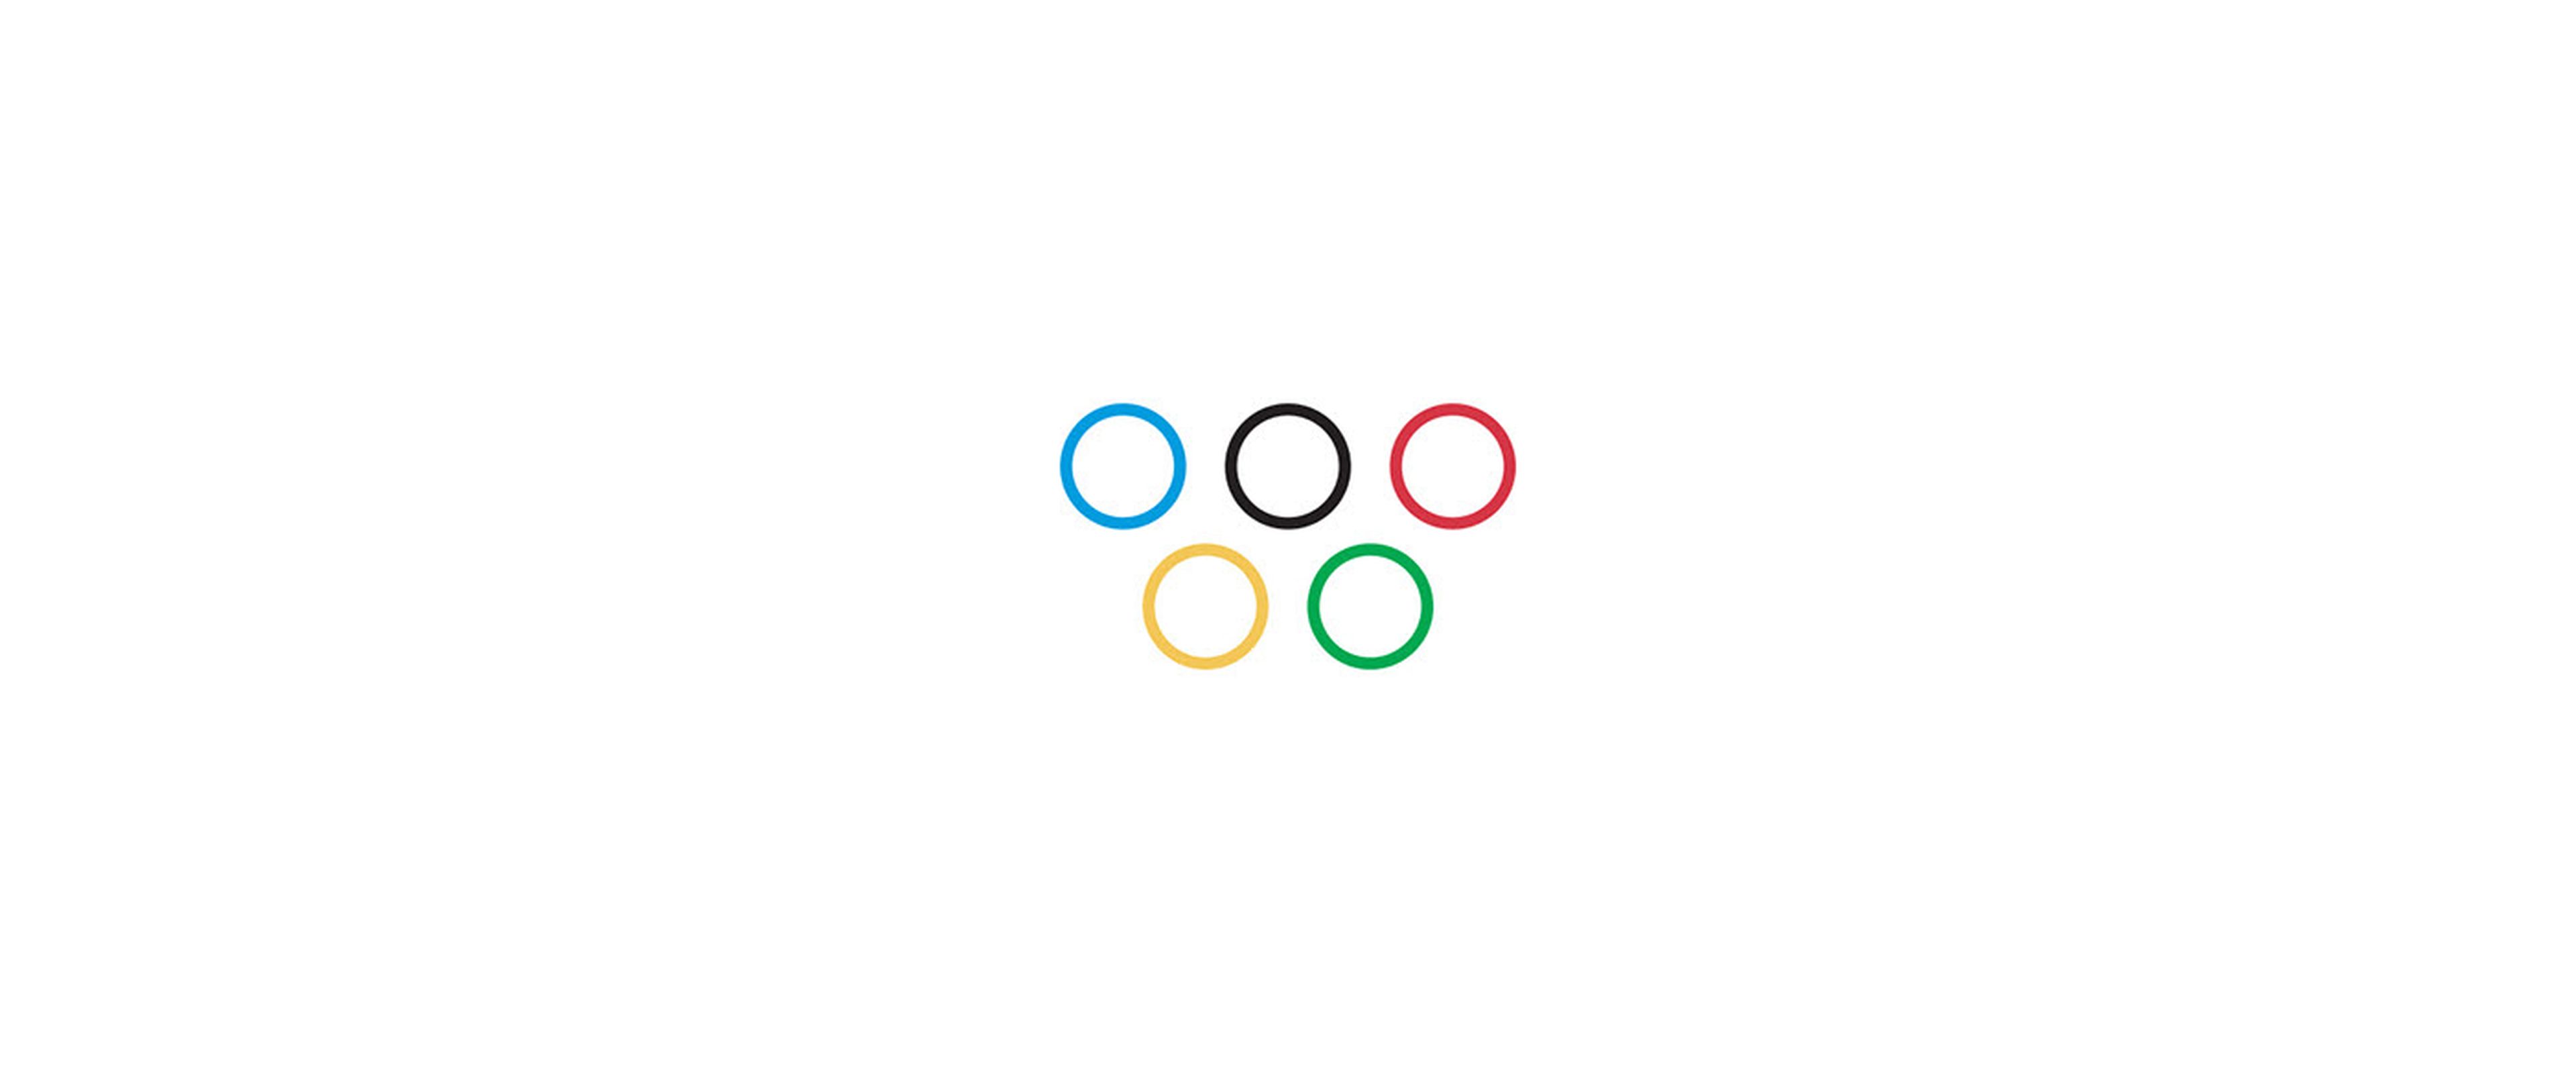 Logo de los Juegos Olímpicos diseñado por Jure Tovrljan.